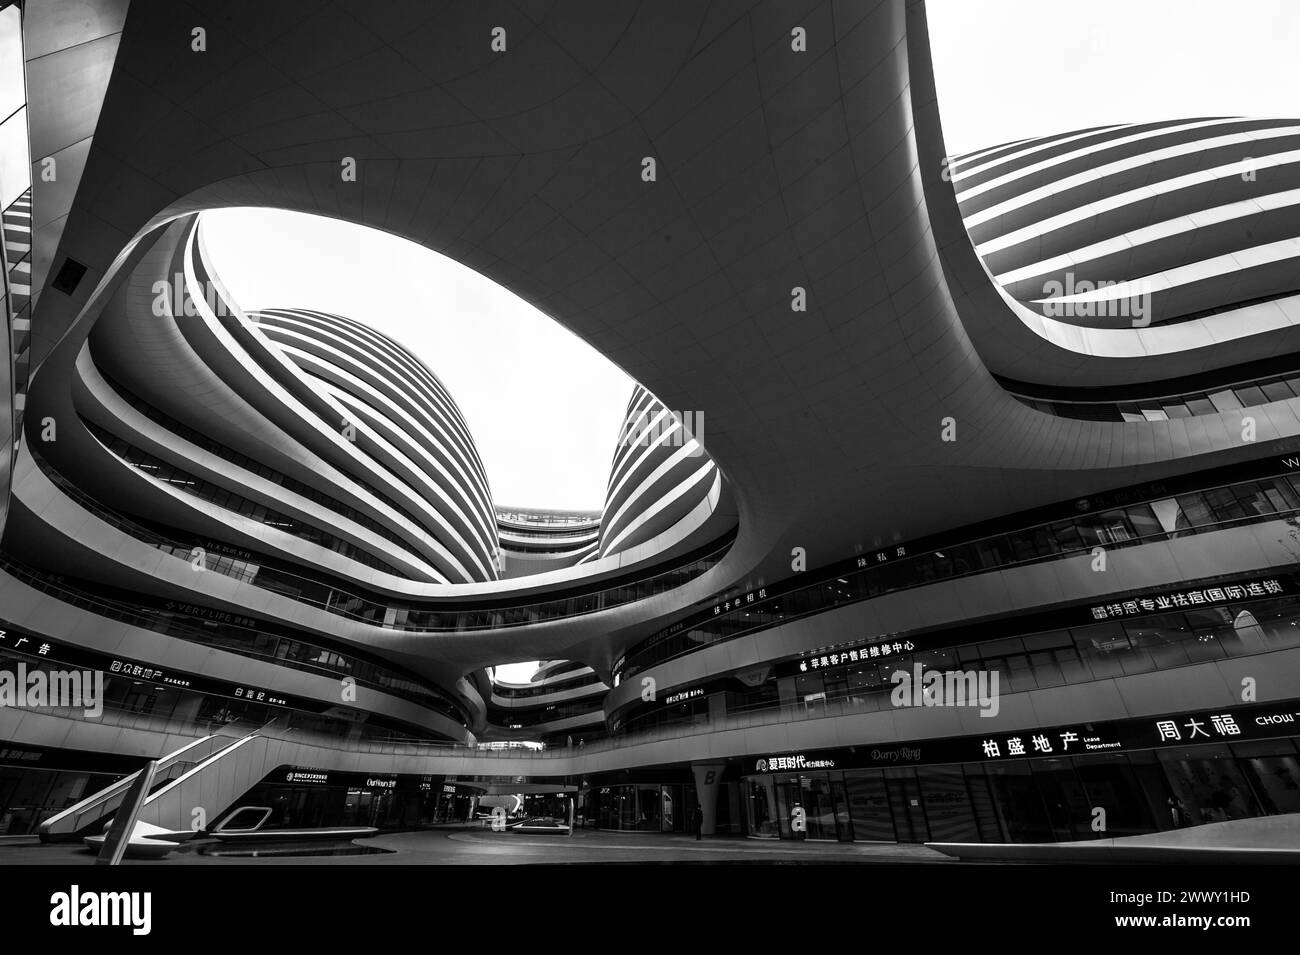 Galaxy soho, architecture, zaha hadid, beijing, china Stock Photo